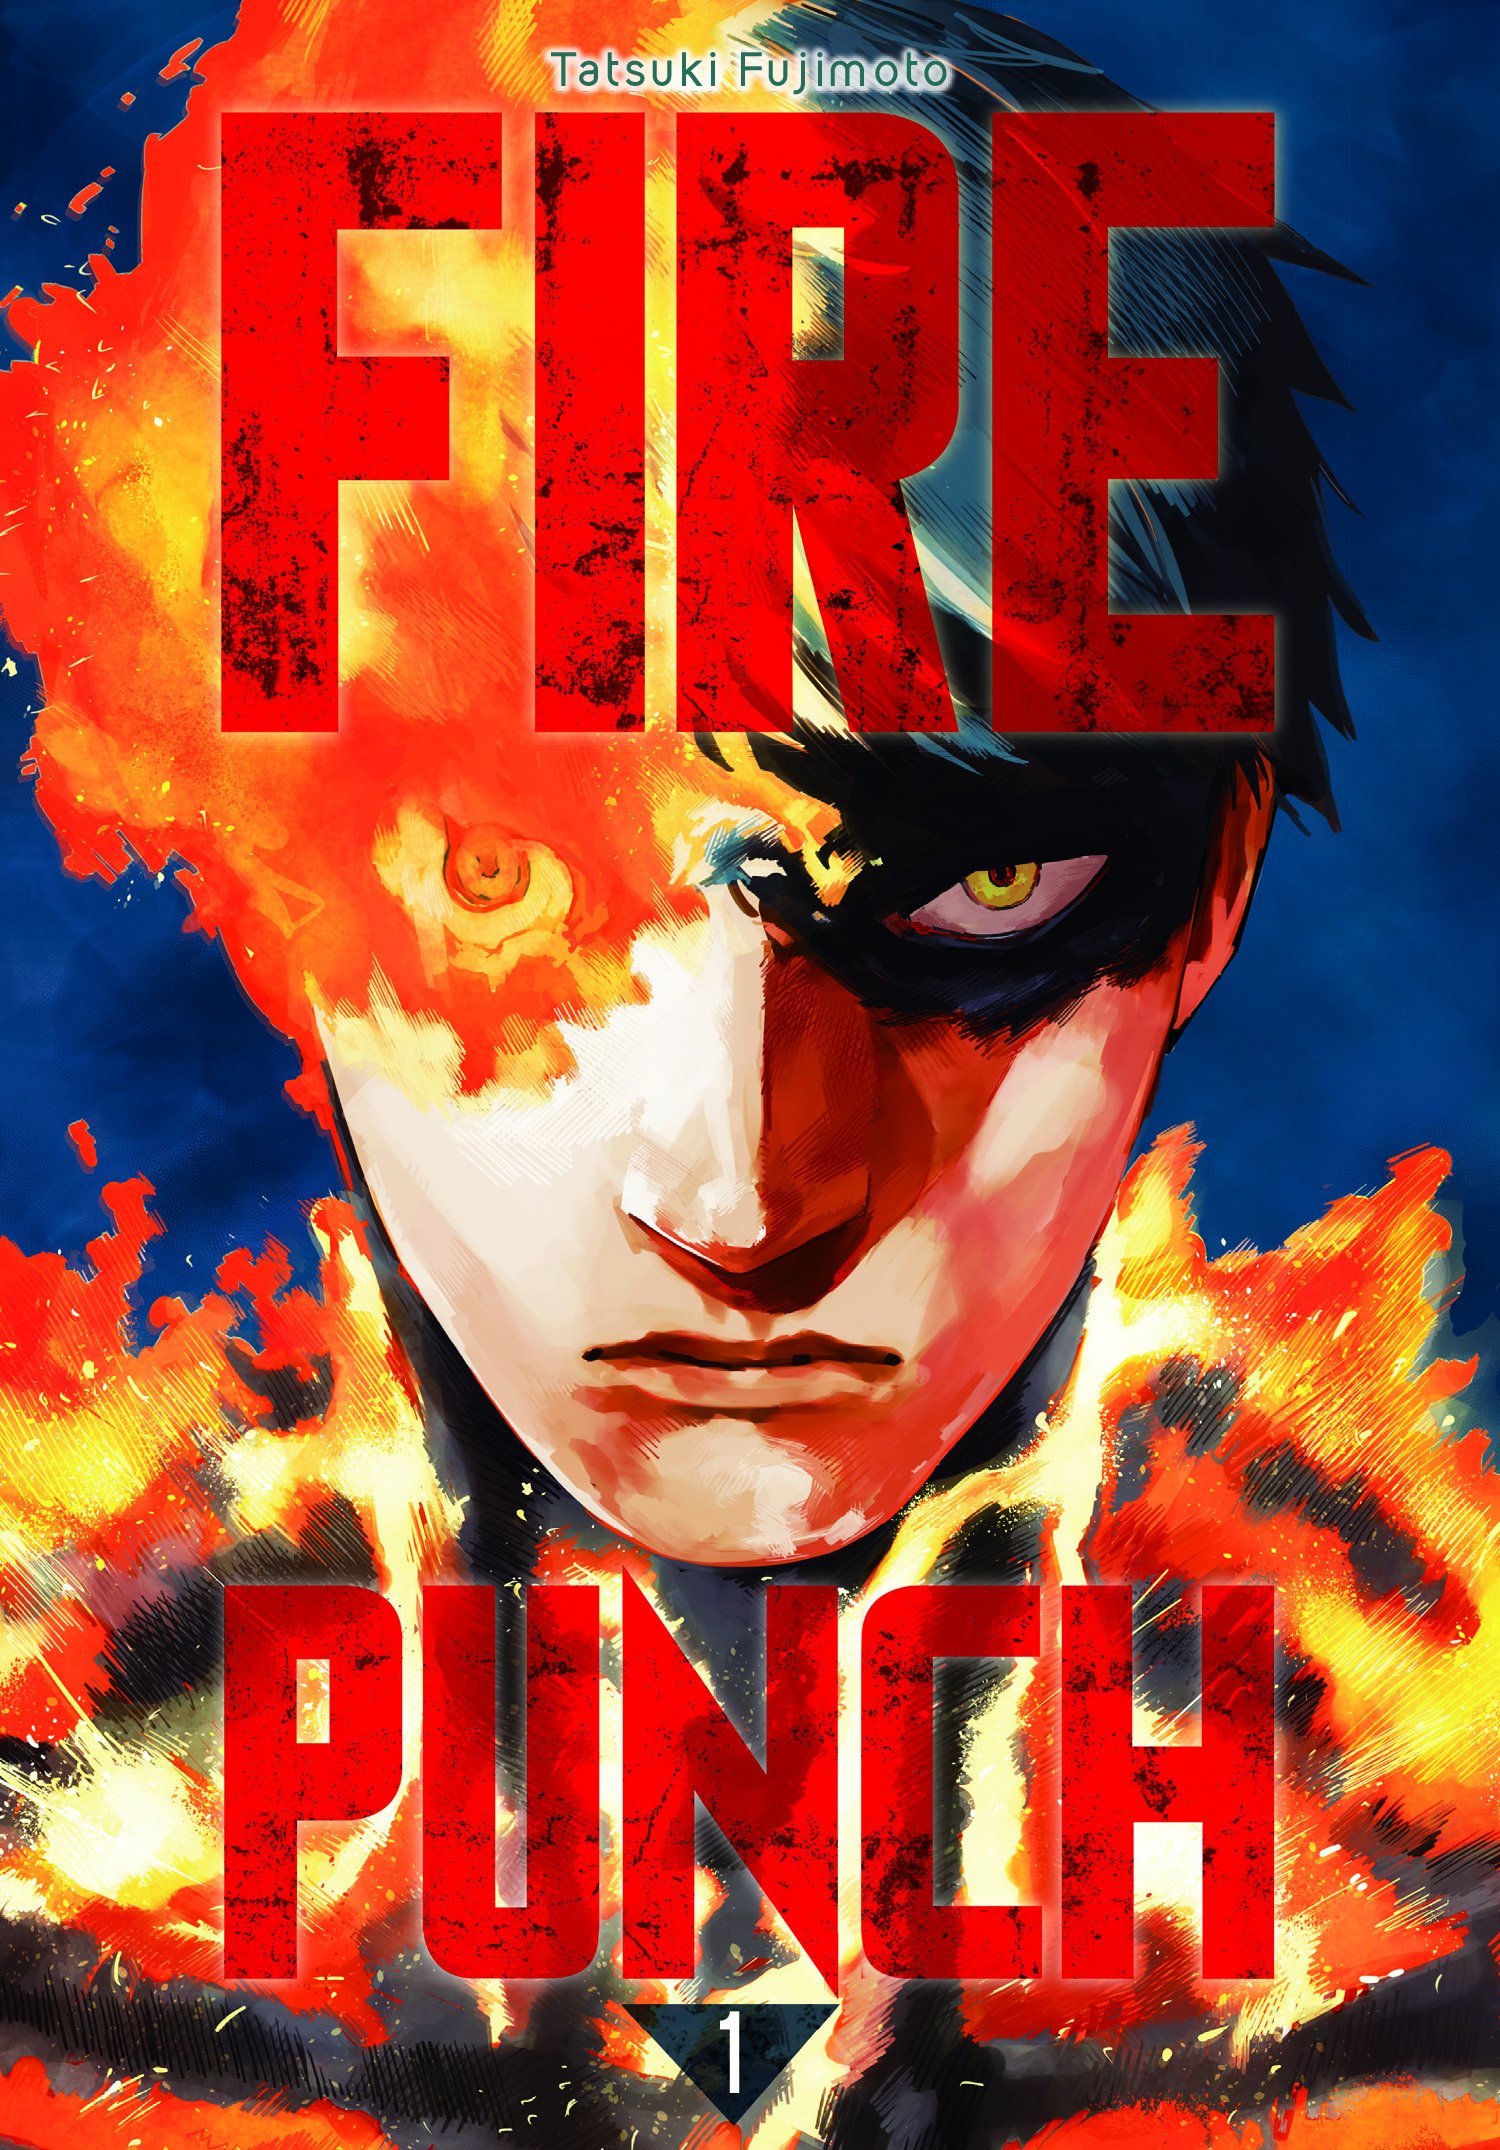 Critique Avis Fire Punch de Tatsuki Fujimoto | Livres/BD/Mangas Culture